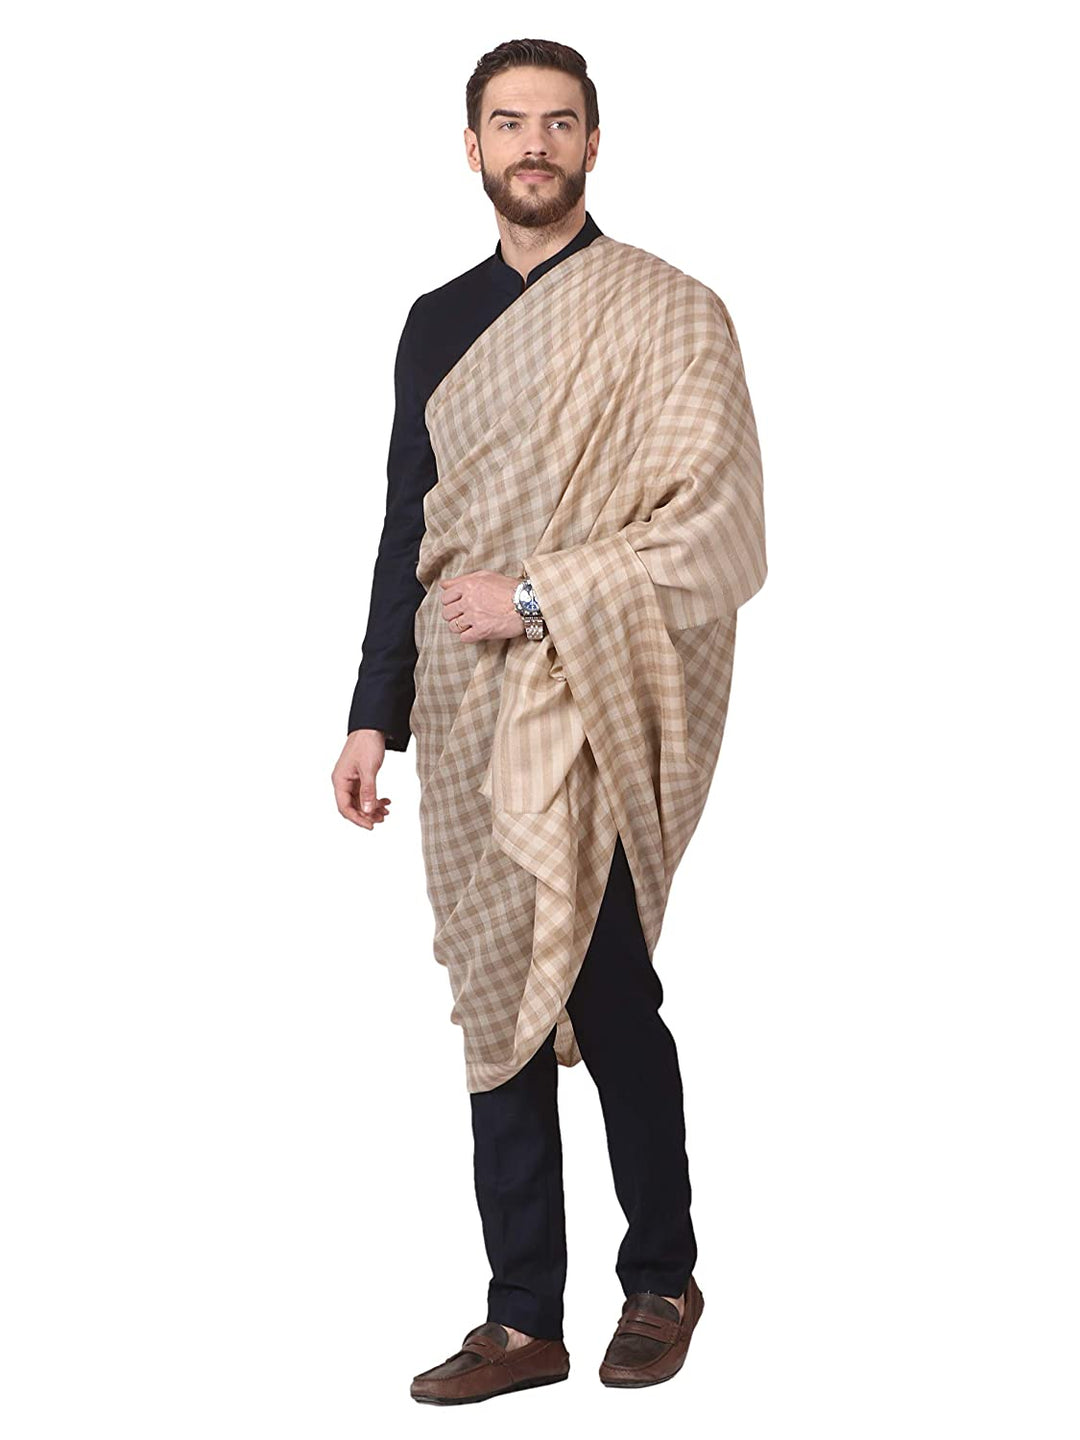 Pashtush India 114x228 Pashtush Mens Woven Check Shawl, Ultra-Light Weight - Fine Wool, Medium, Herringbone Checks